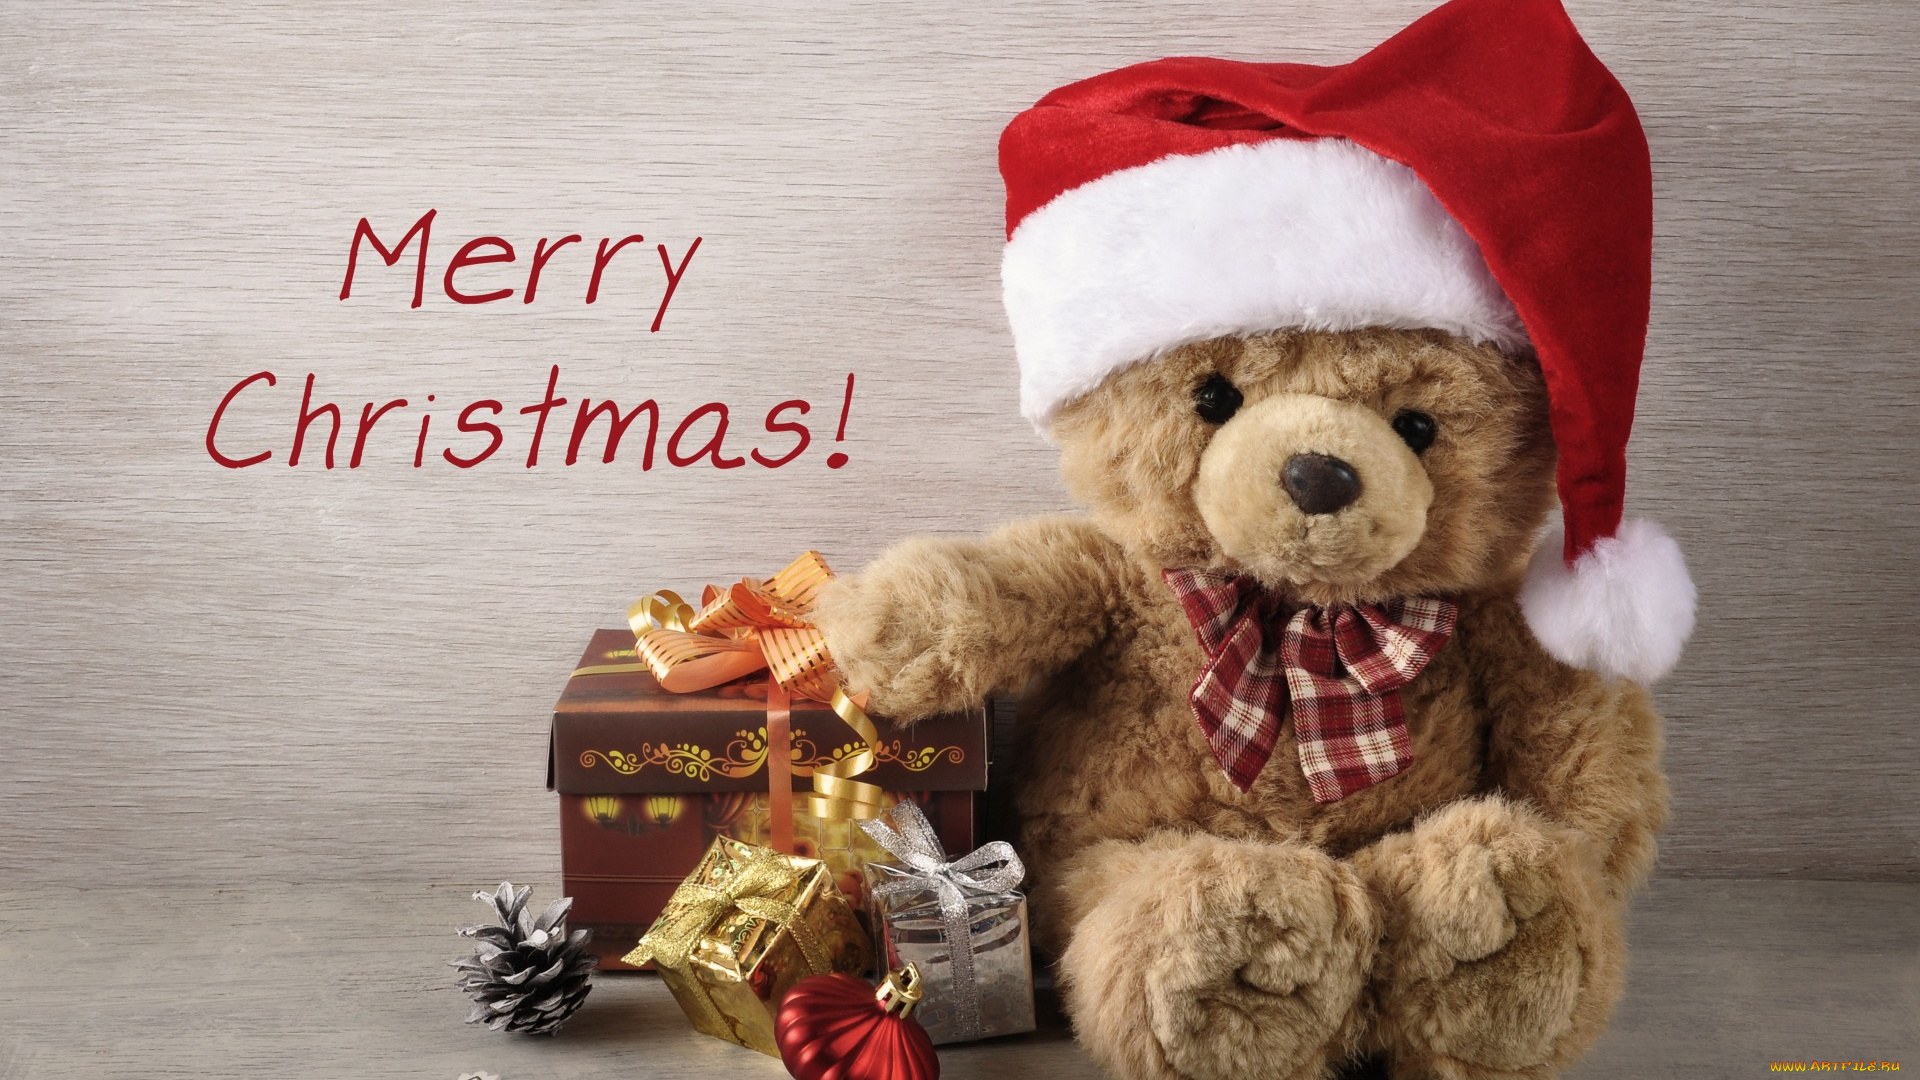 праздничные, мягкие, игрушки, holiday, celebration, gift, игрушки, teddy, bear, рождество, christmas, елка, vintage, xmas, новый, год, подарки, decoration, merry, украшения